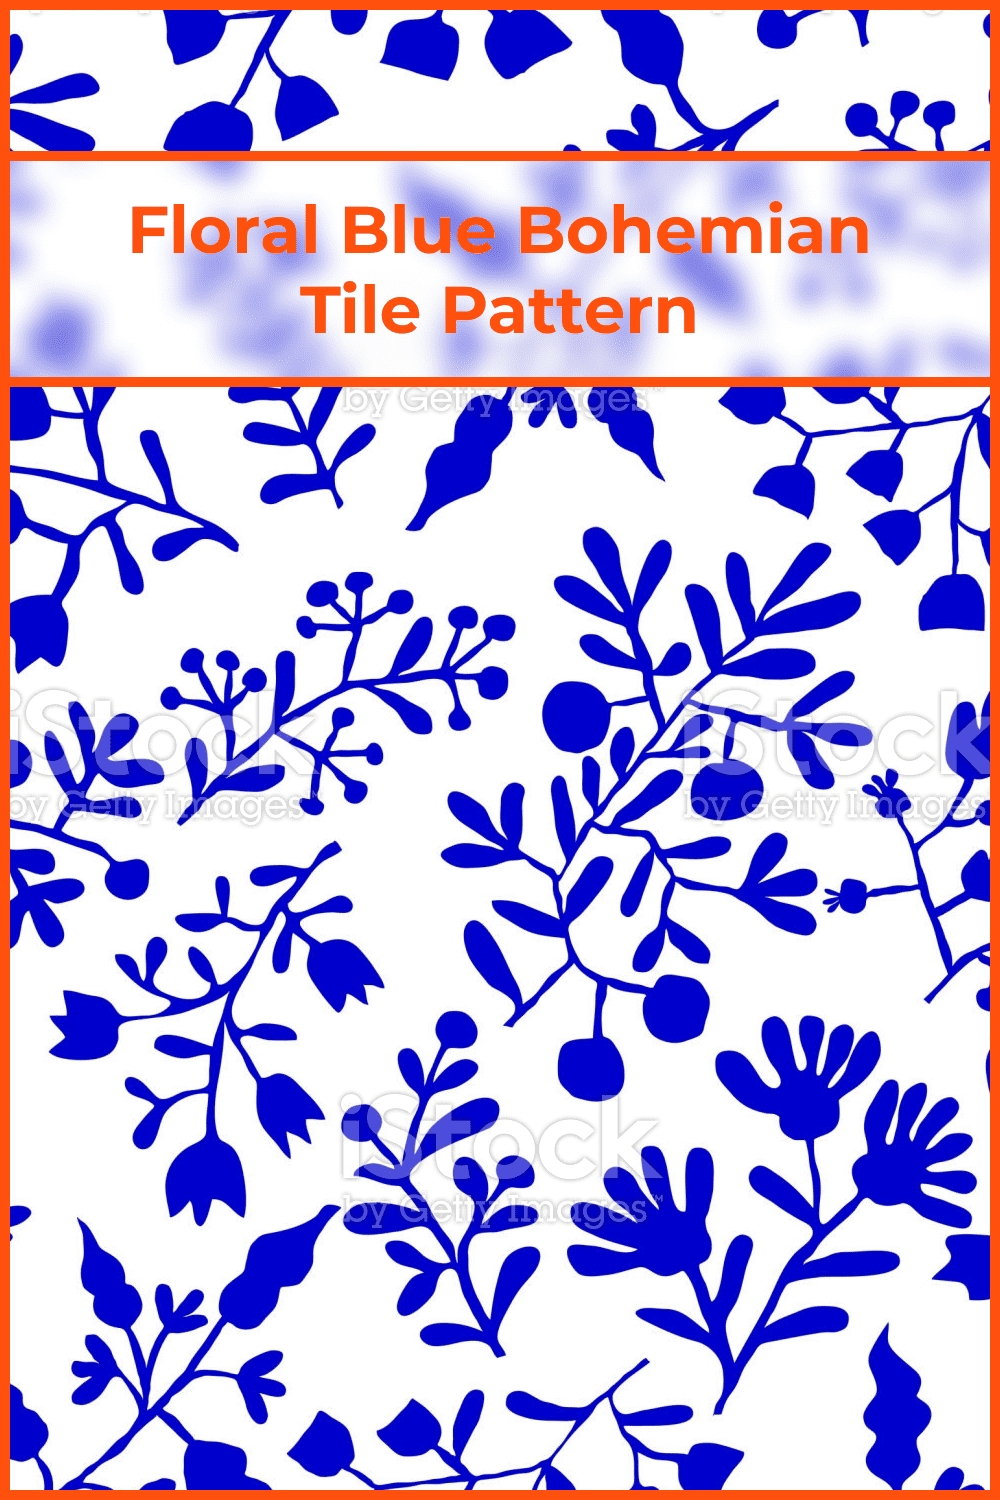 Floral blue bohemian tile.